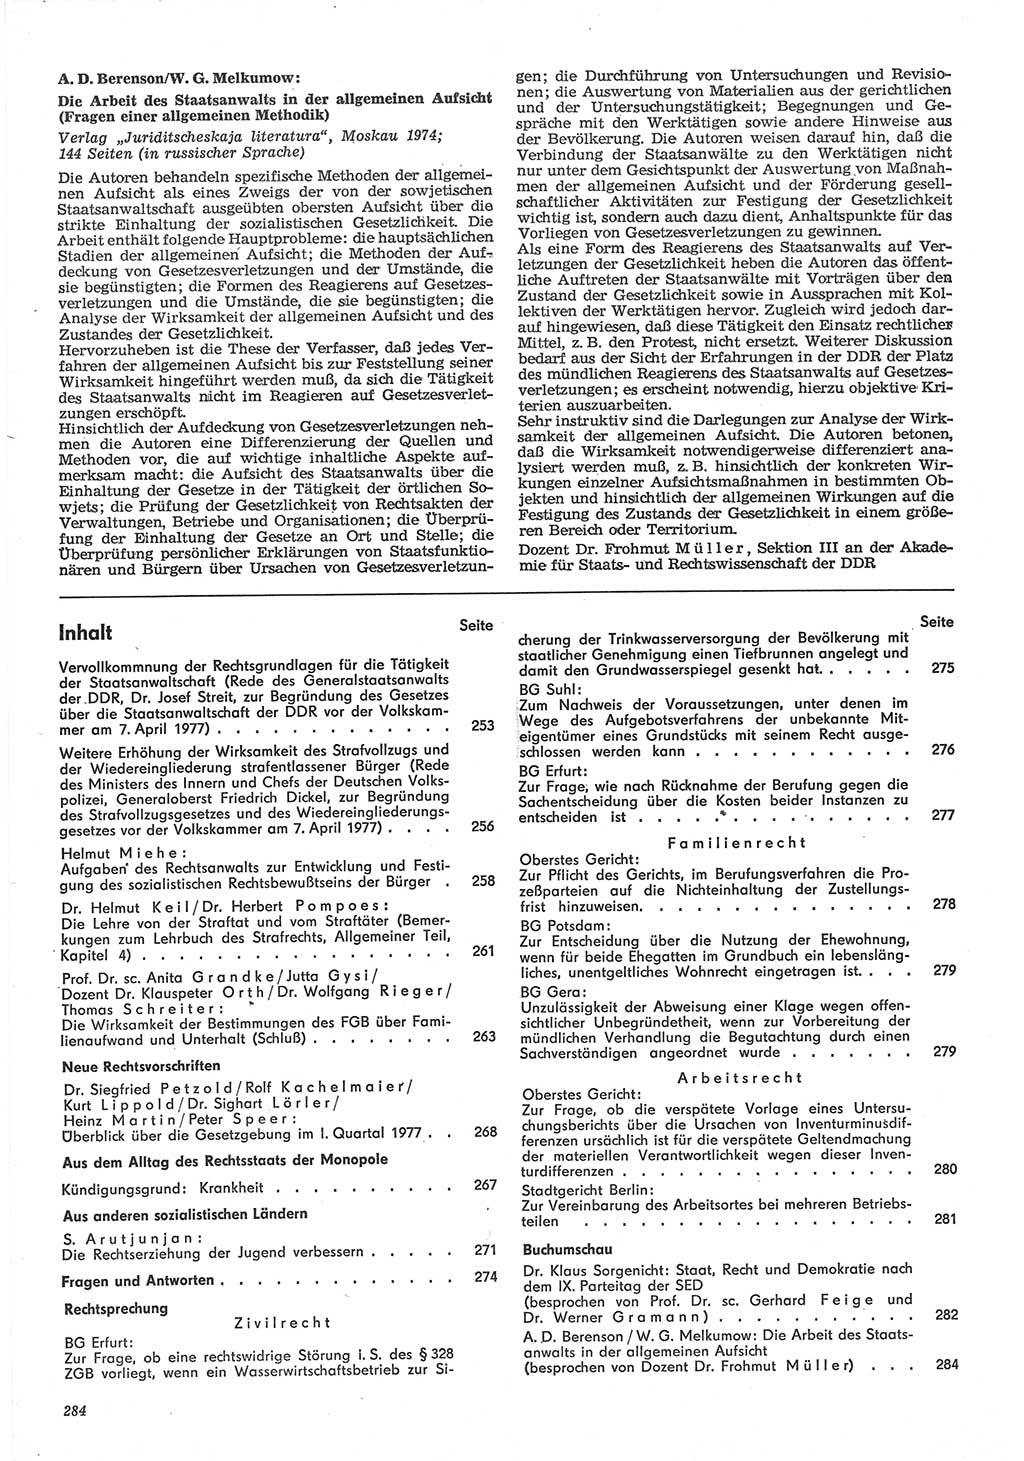 Neue Justiz (NJ), Zeitschrift für Recht und Rechtswissenschaft-Zeitschrift, sozialistisches Recht und Gesetzlichkeit, 31. Jahrgang 1977, Seite 284 (NJ DDR 1977, S. 284)